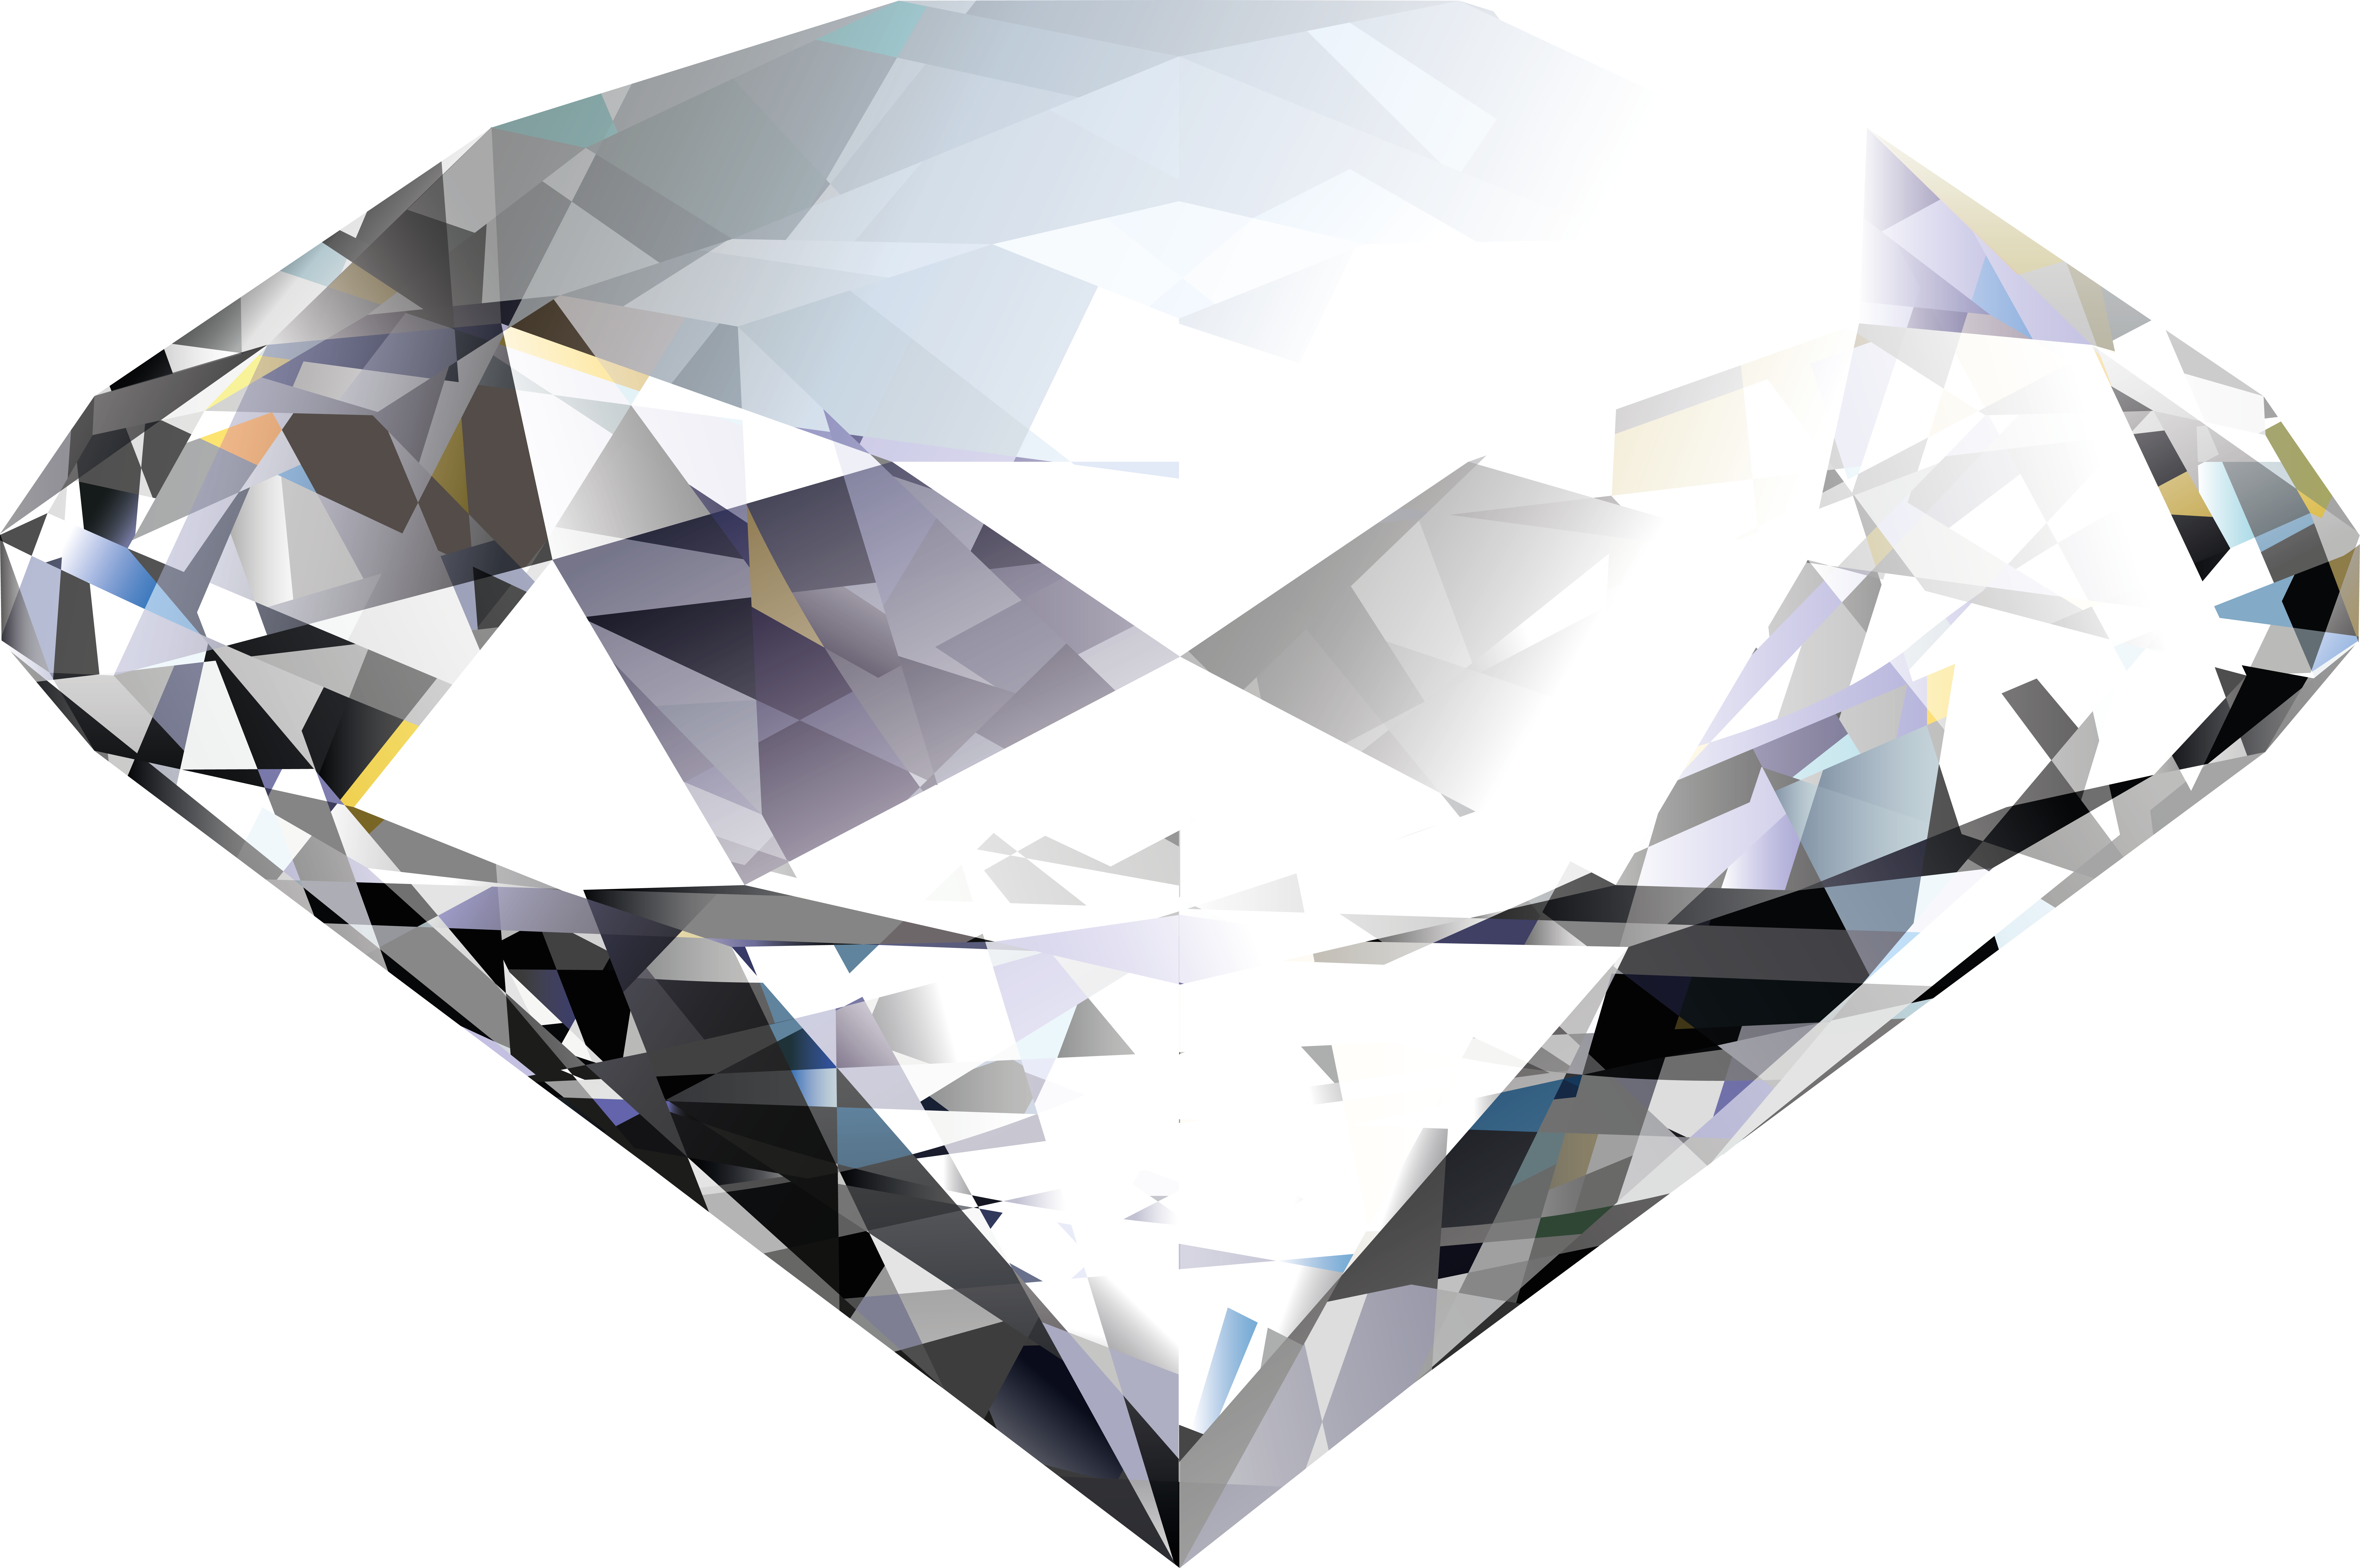 Klejnoty, diamenty